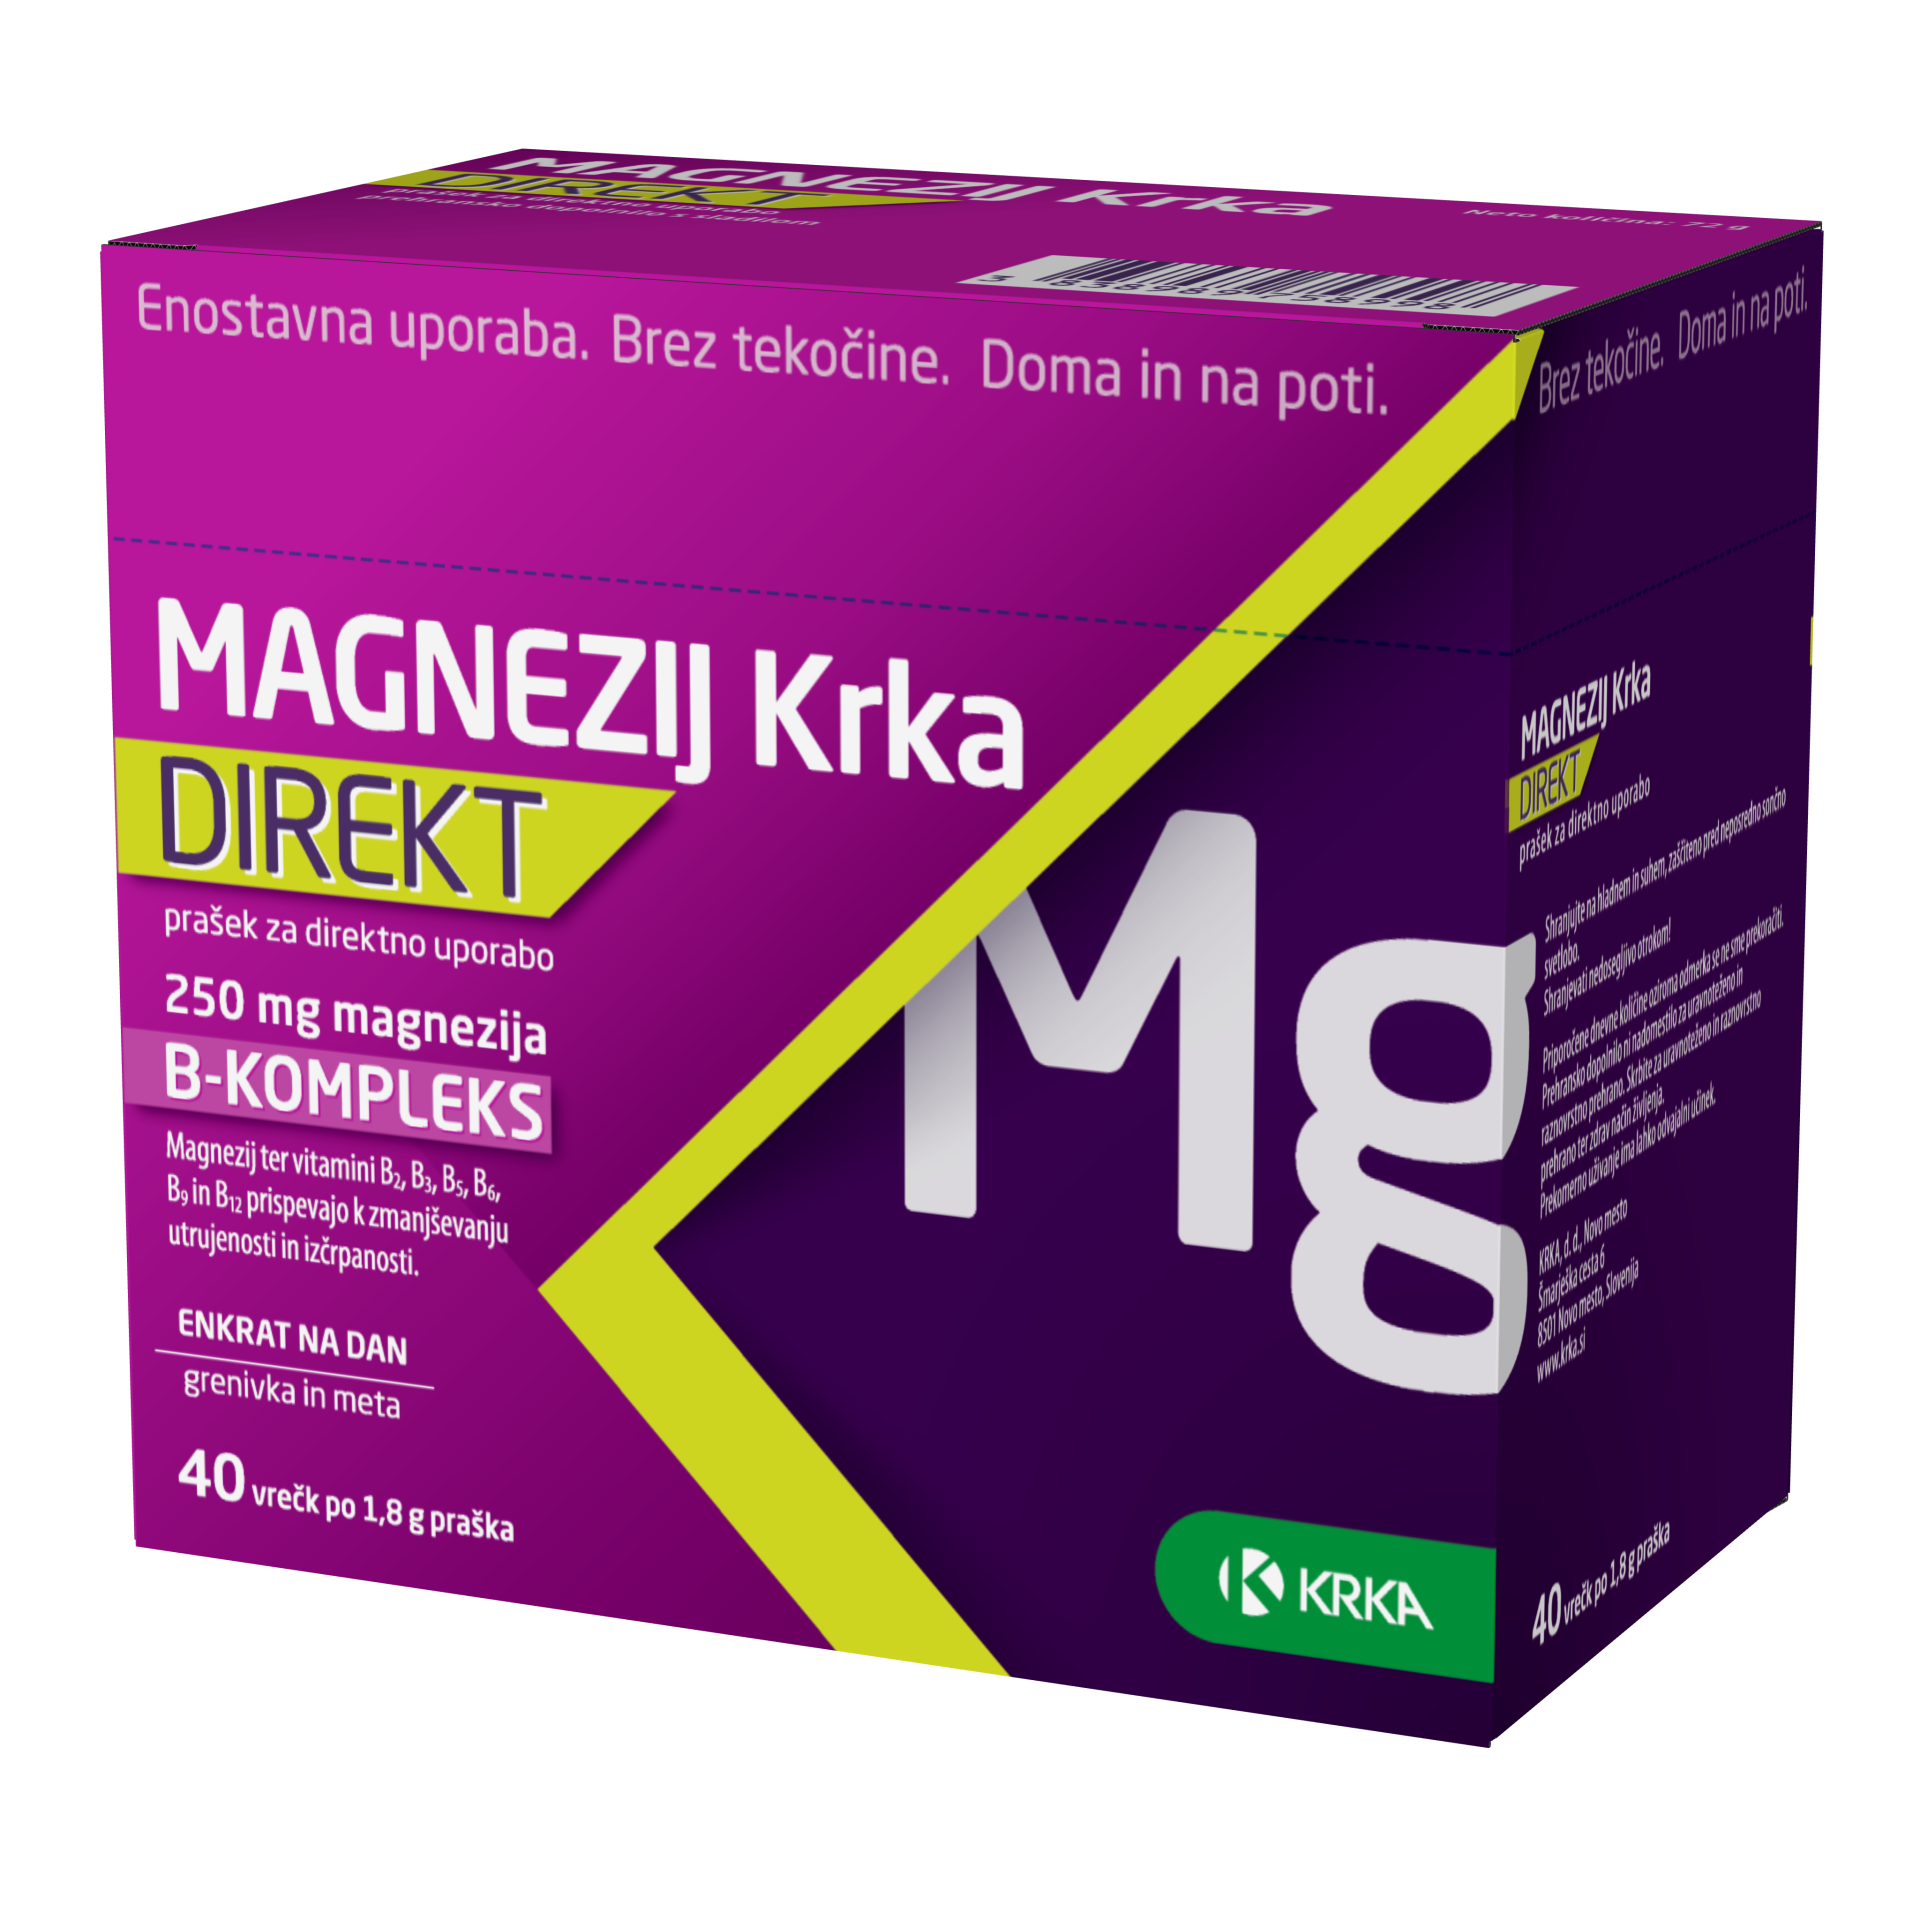 Magnezij Krka Direkt prašek za direktno uporabo, 40 vrečk po 1,8 g